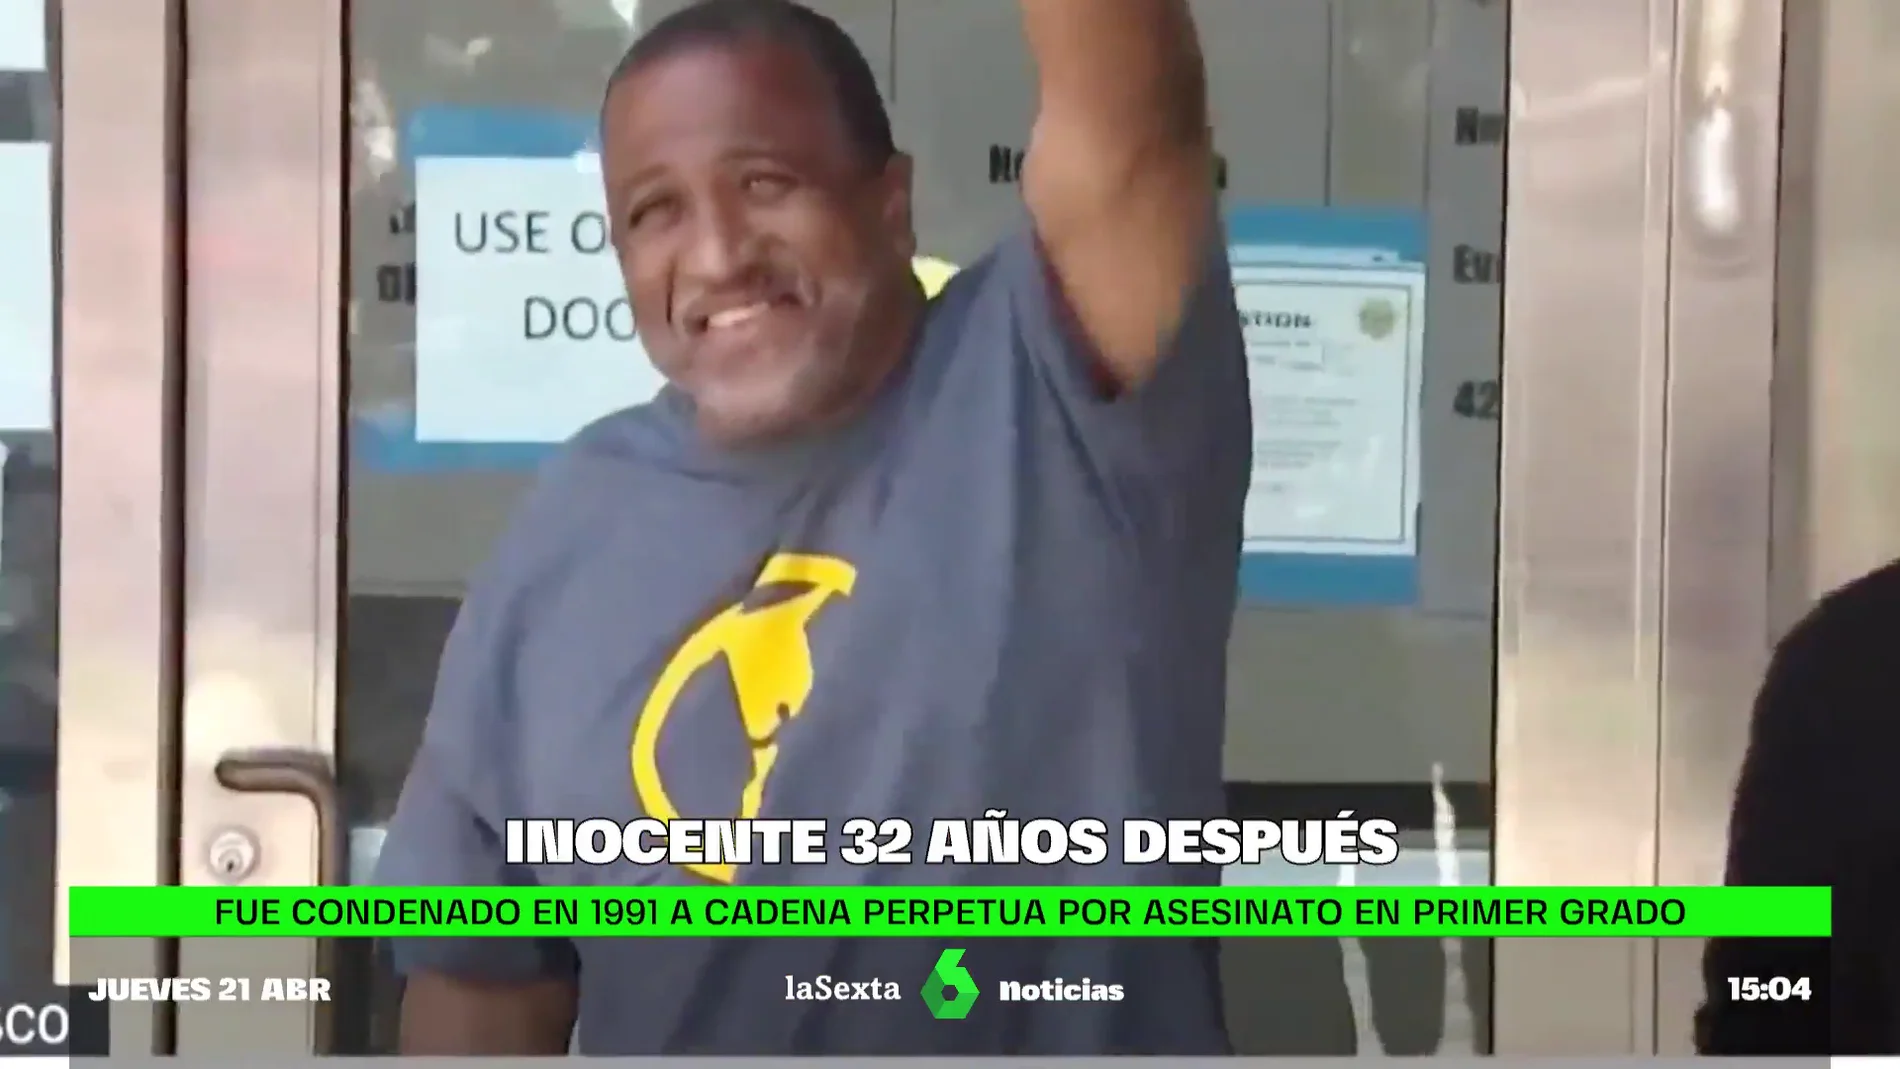 Joaquín Ciria, declarado inocente tras pasar 32 años en prisión injustamente